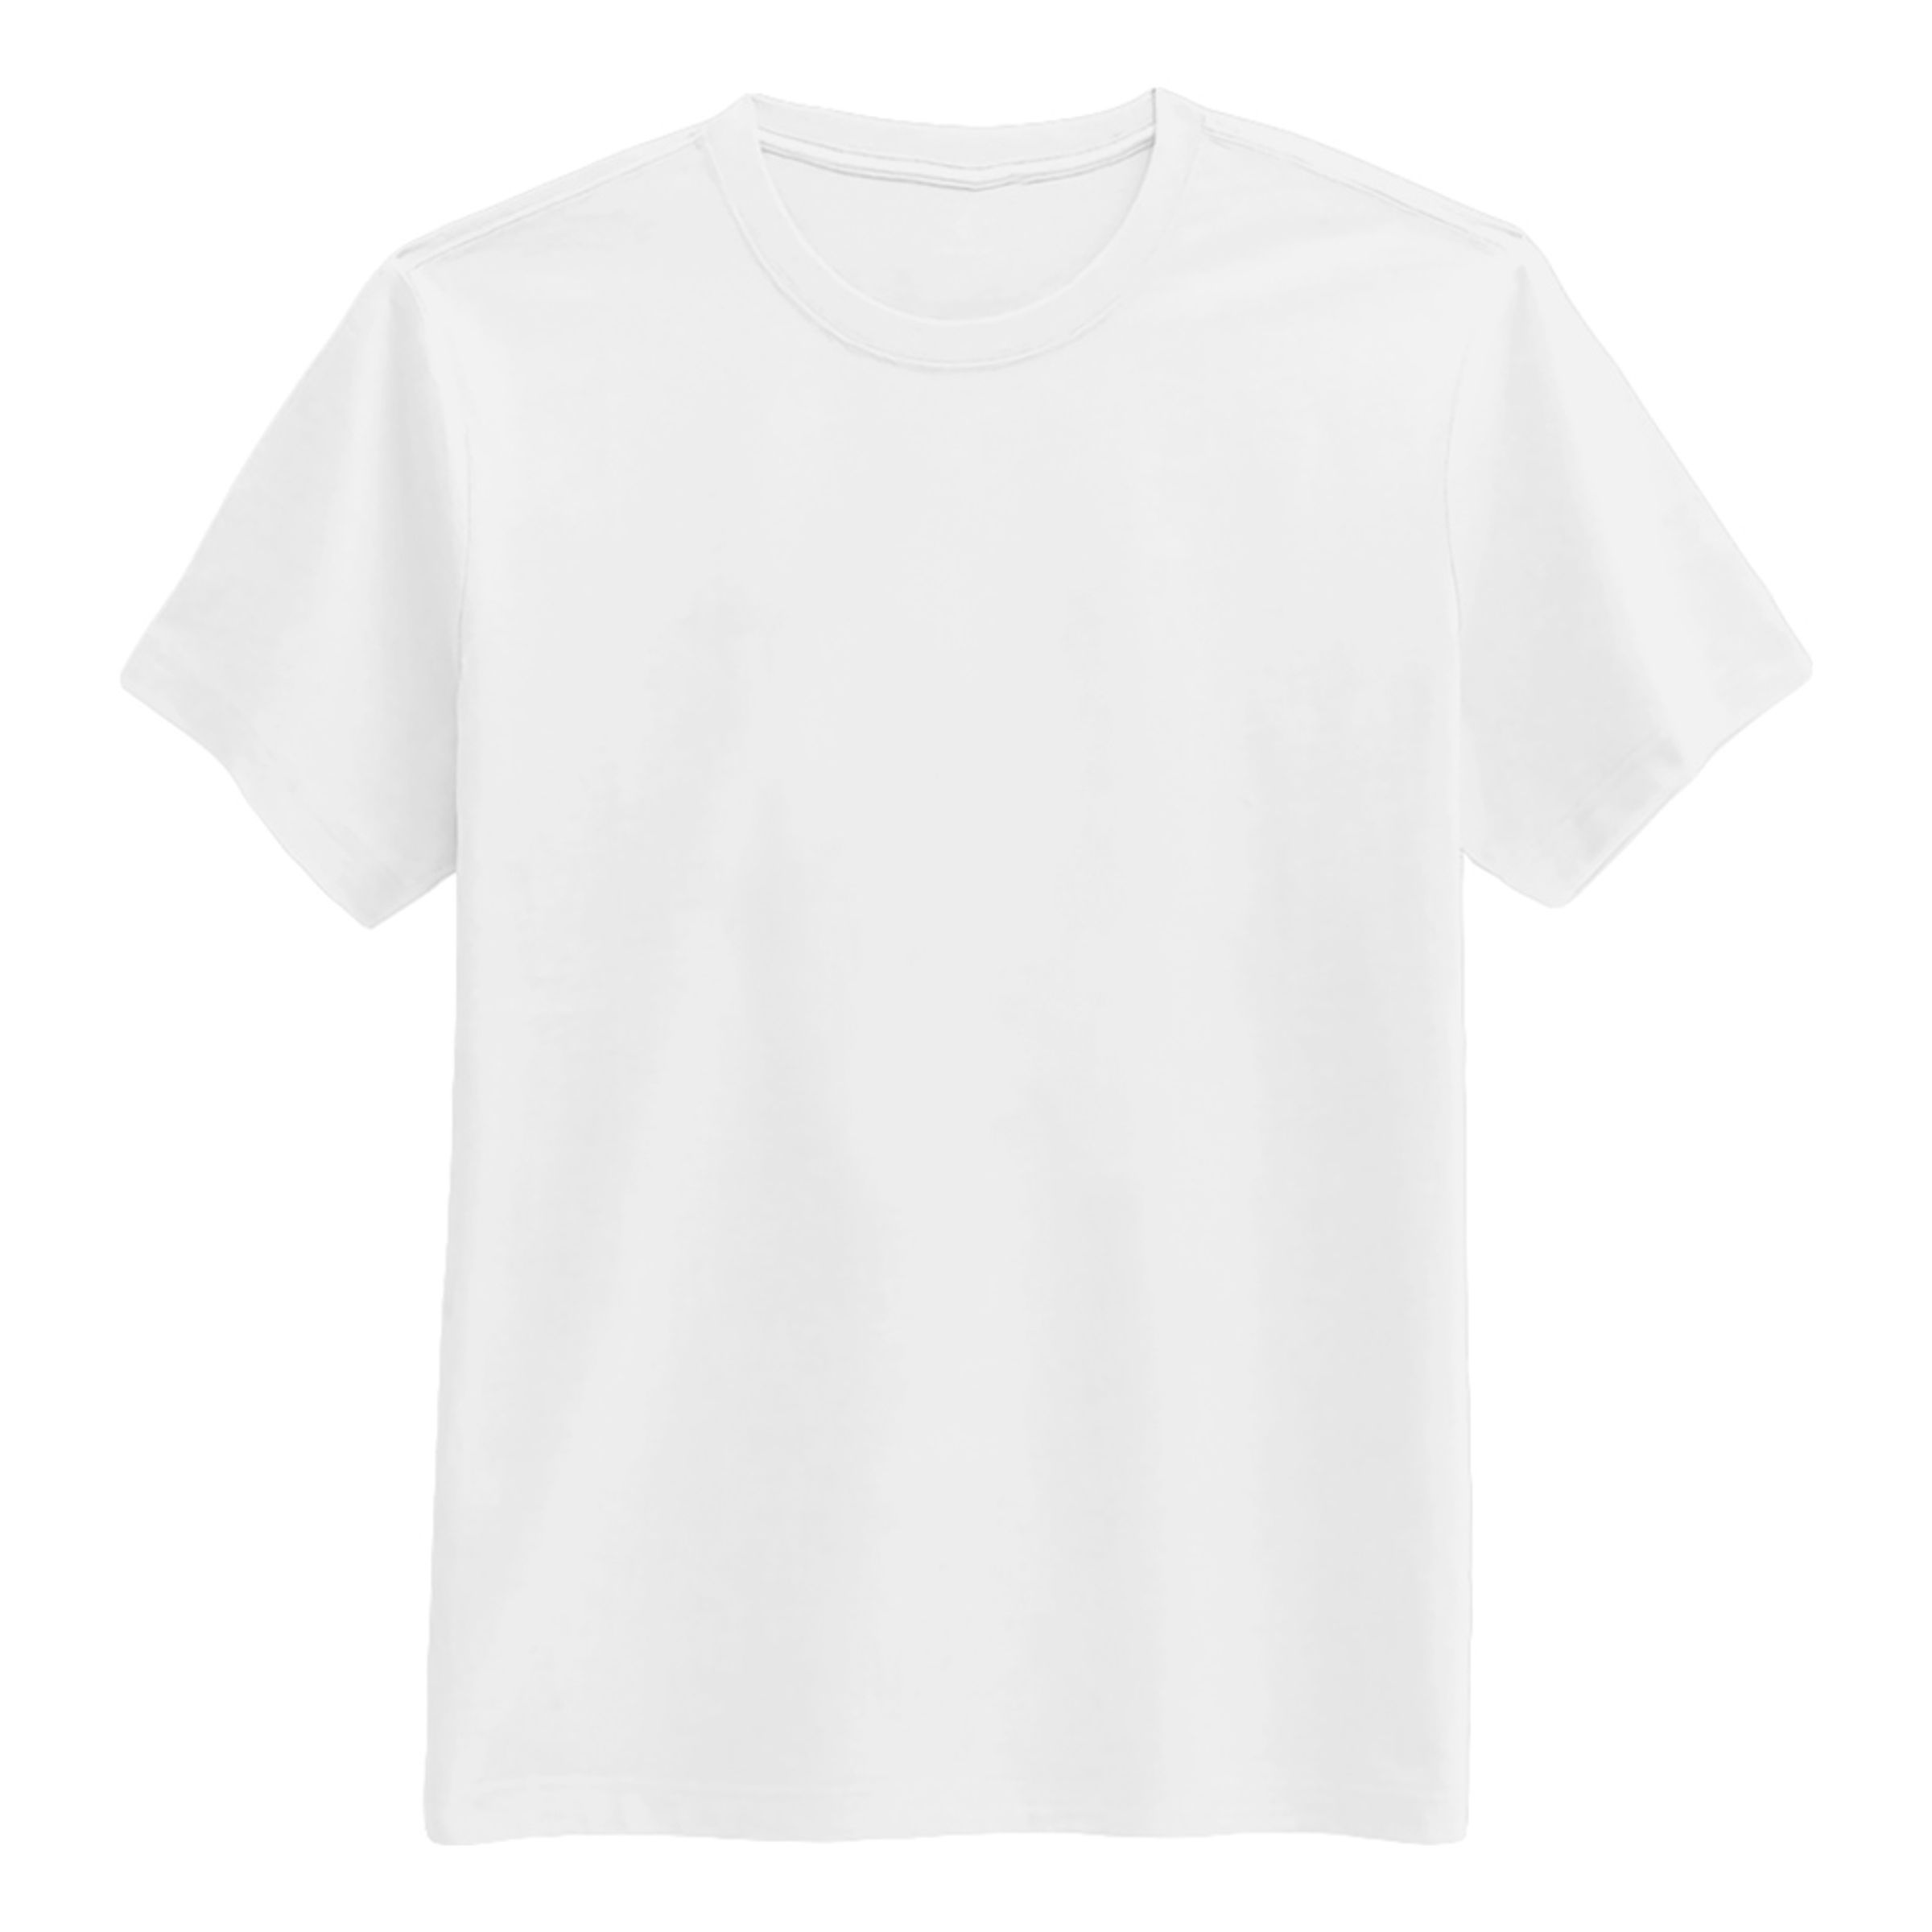 T-shirt Vit - Large